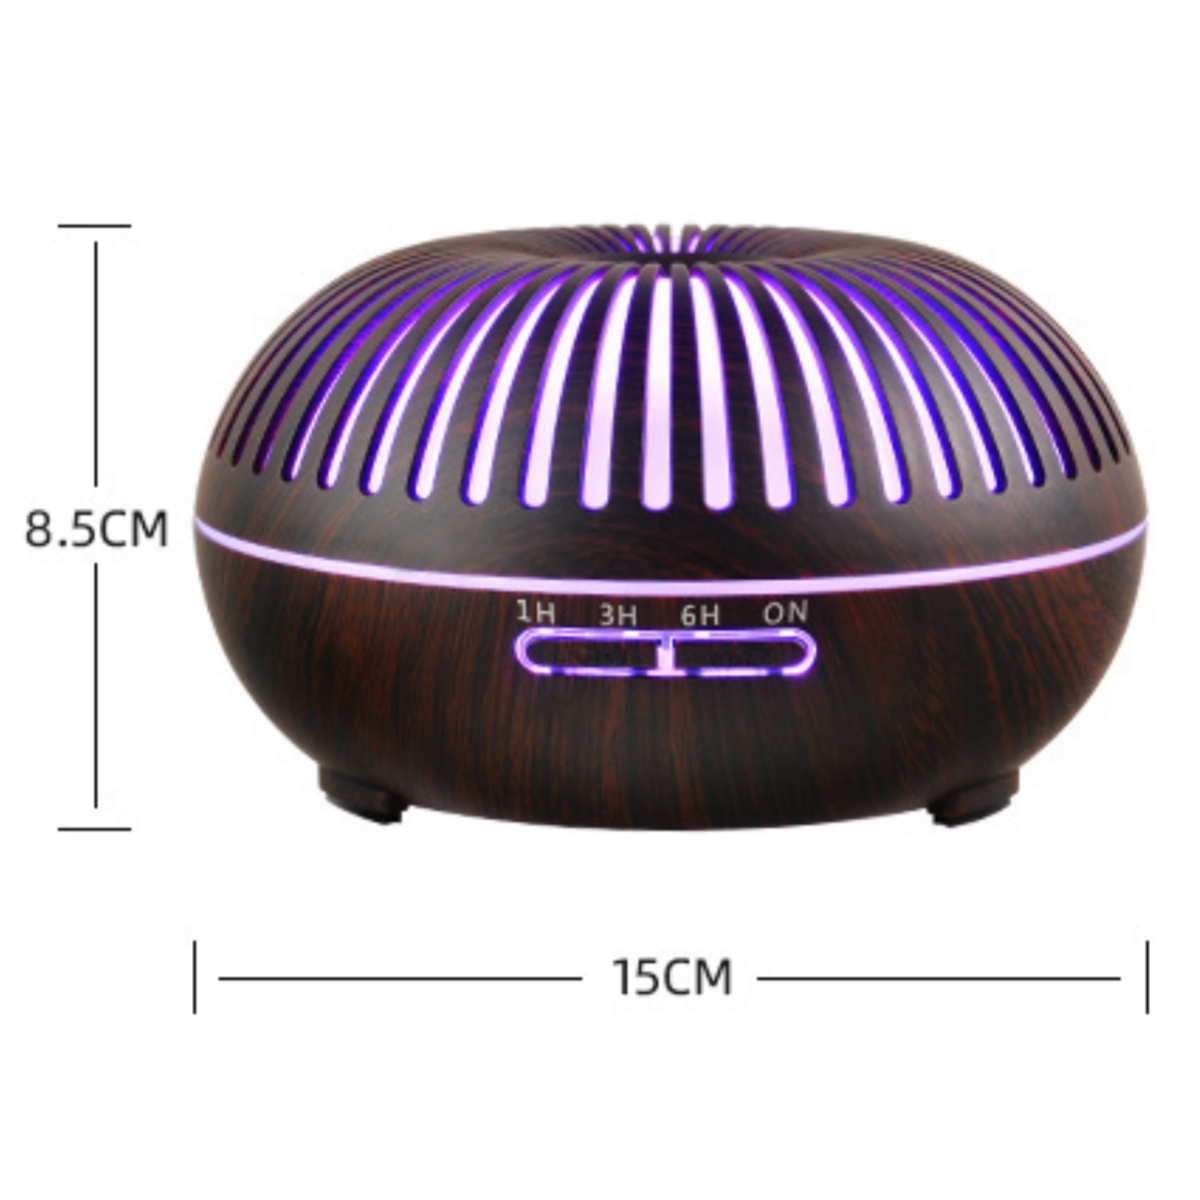 m²) luftbefeuchter luftzerstäuber (Raumgröße: 20 SHAOKE mini Braun wiederaufladbar usb cup dazzle Luftbefeuchter